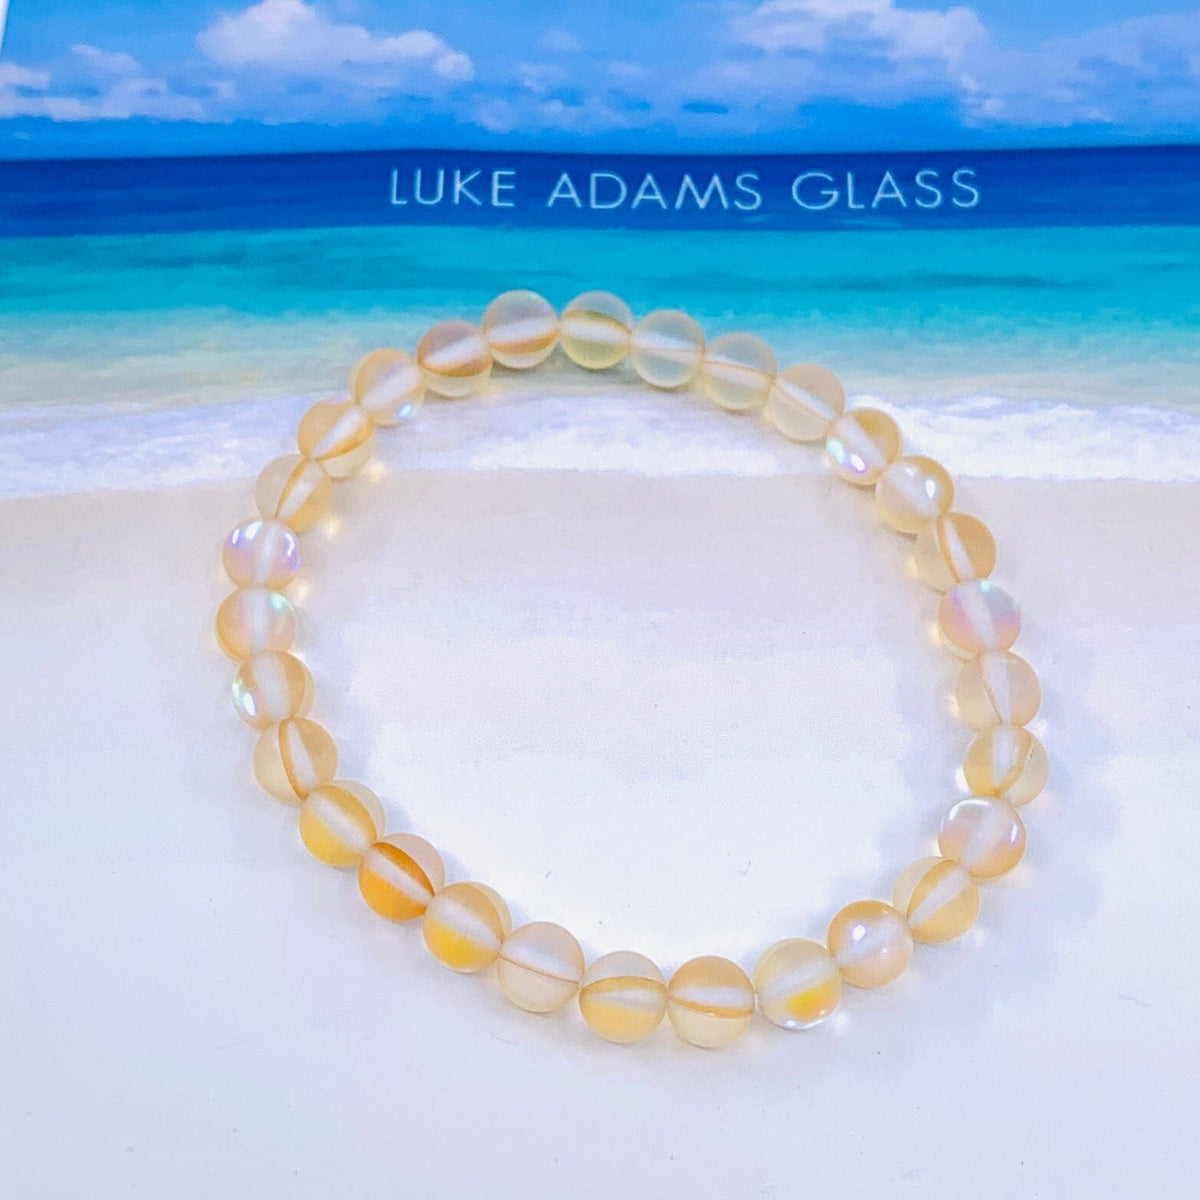 Mermaid Glass Bead Bracelets Jewelry - Peach 